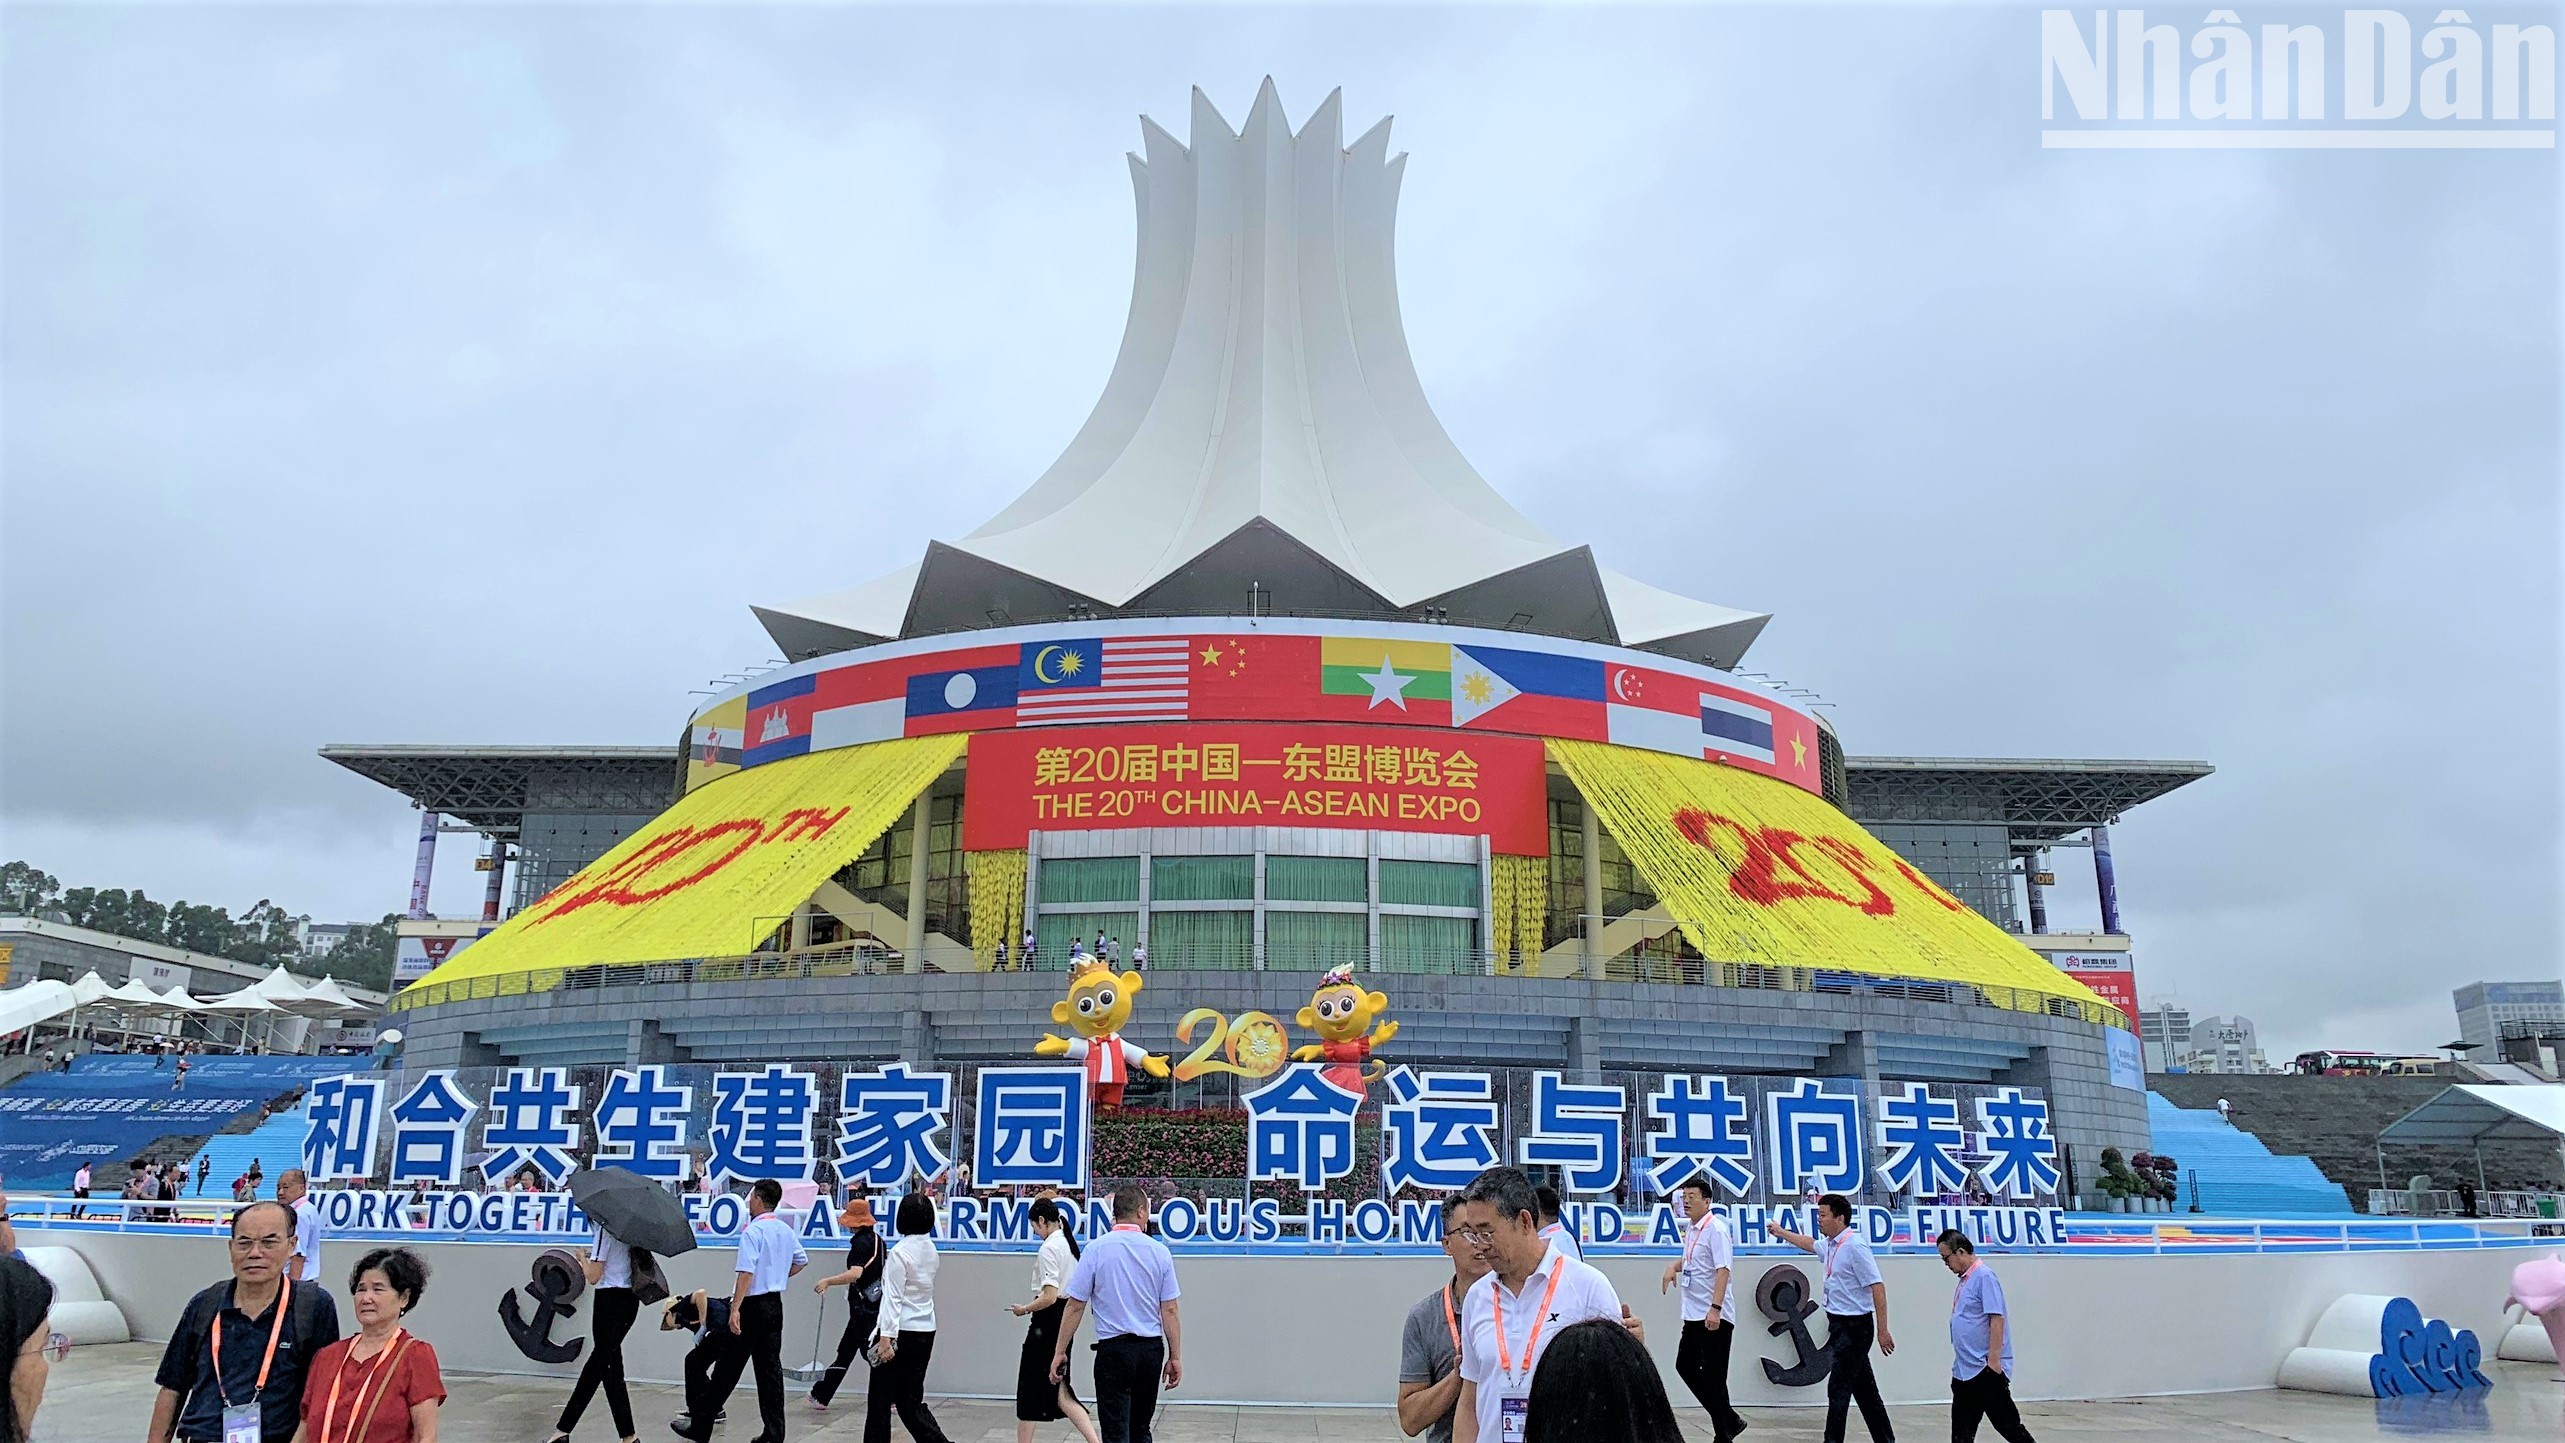 Hội chợ Trung Quốc-ASEAN (CAEXPO) lần thứ 20 được tổ chức tại thành phố Nam Ninh từ 16-19/9. (Ảnh: HỮU HƯNG)